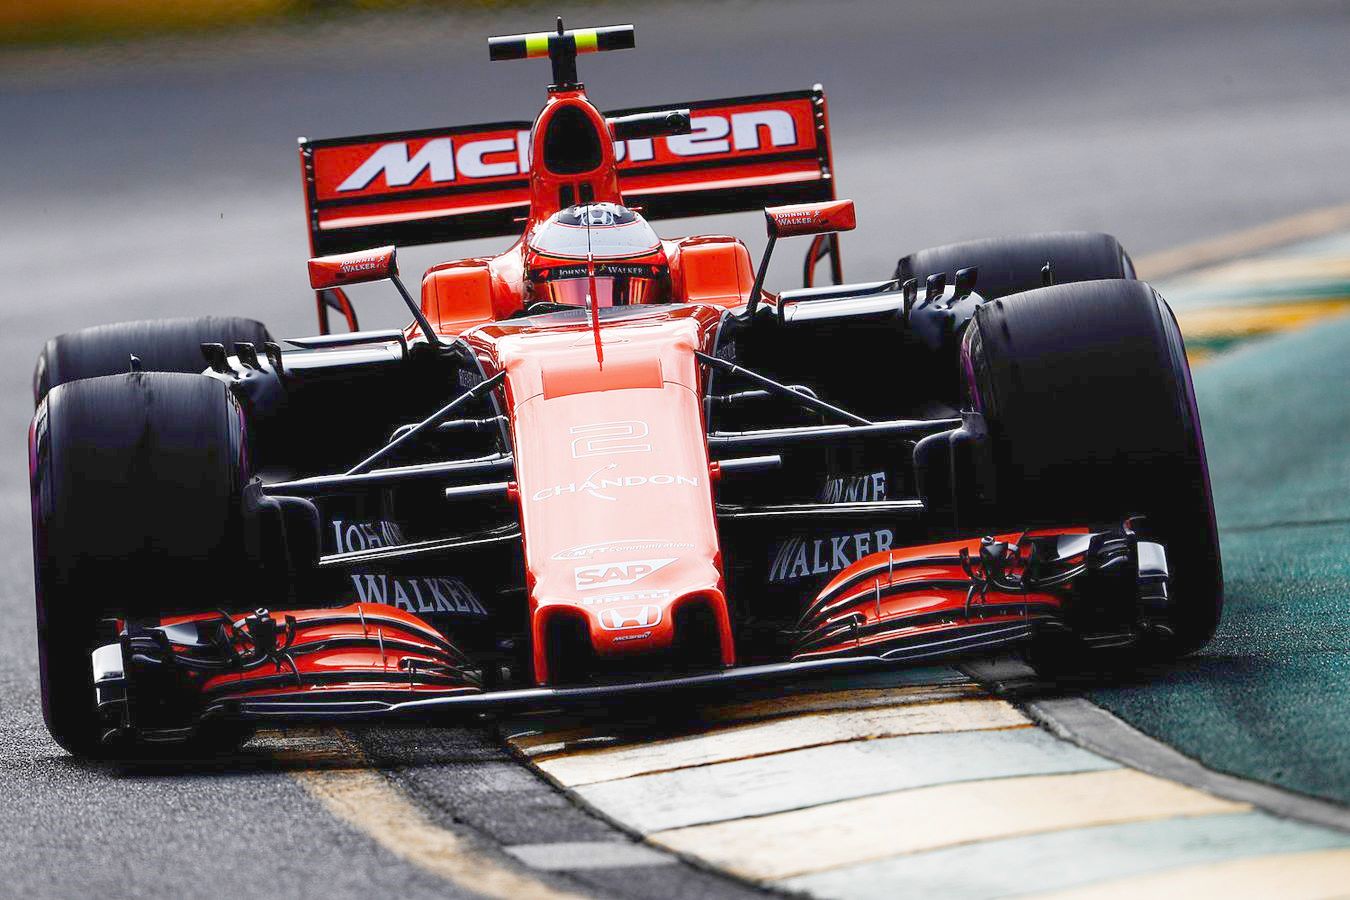 Vandoorne says the McLaren-Honda is a slug